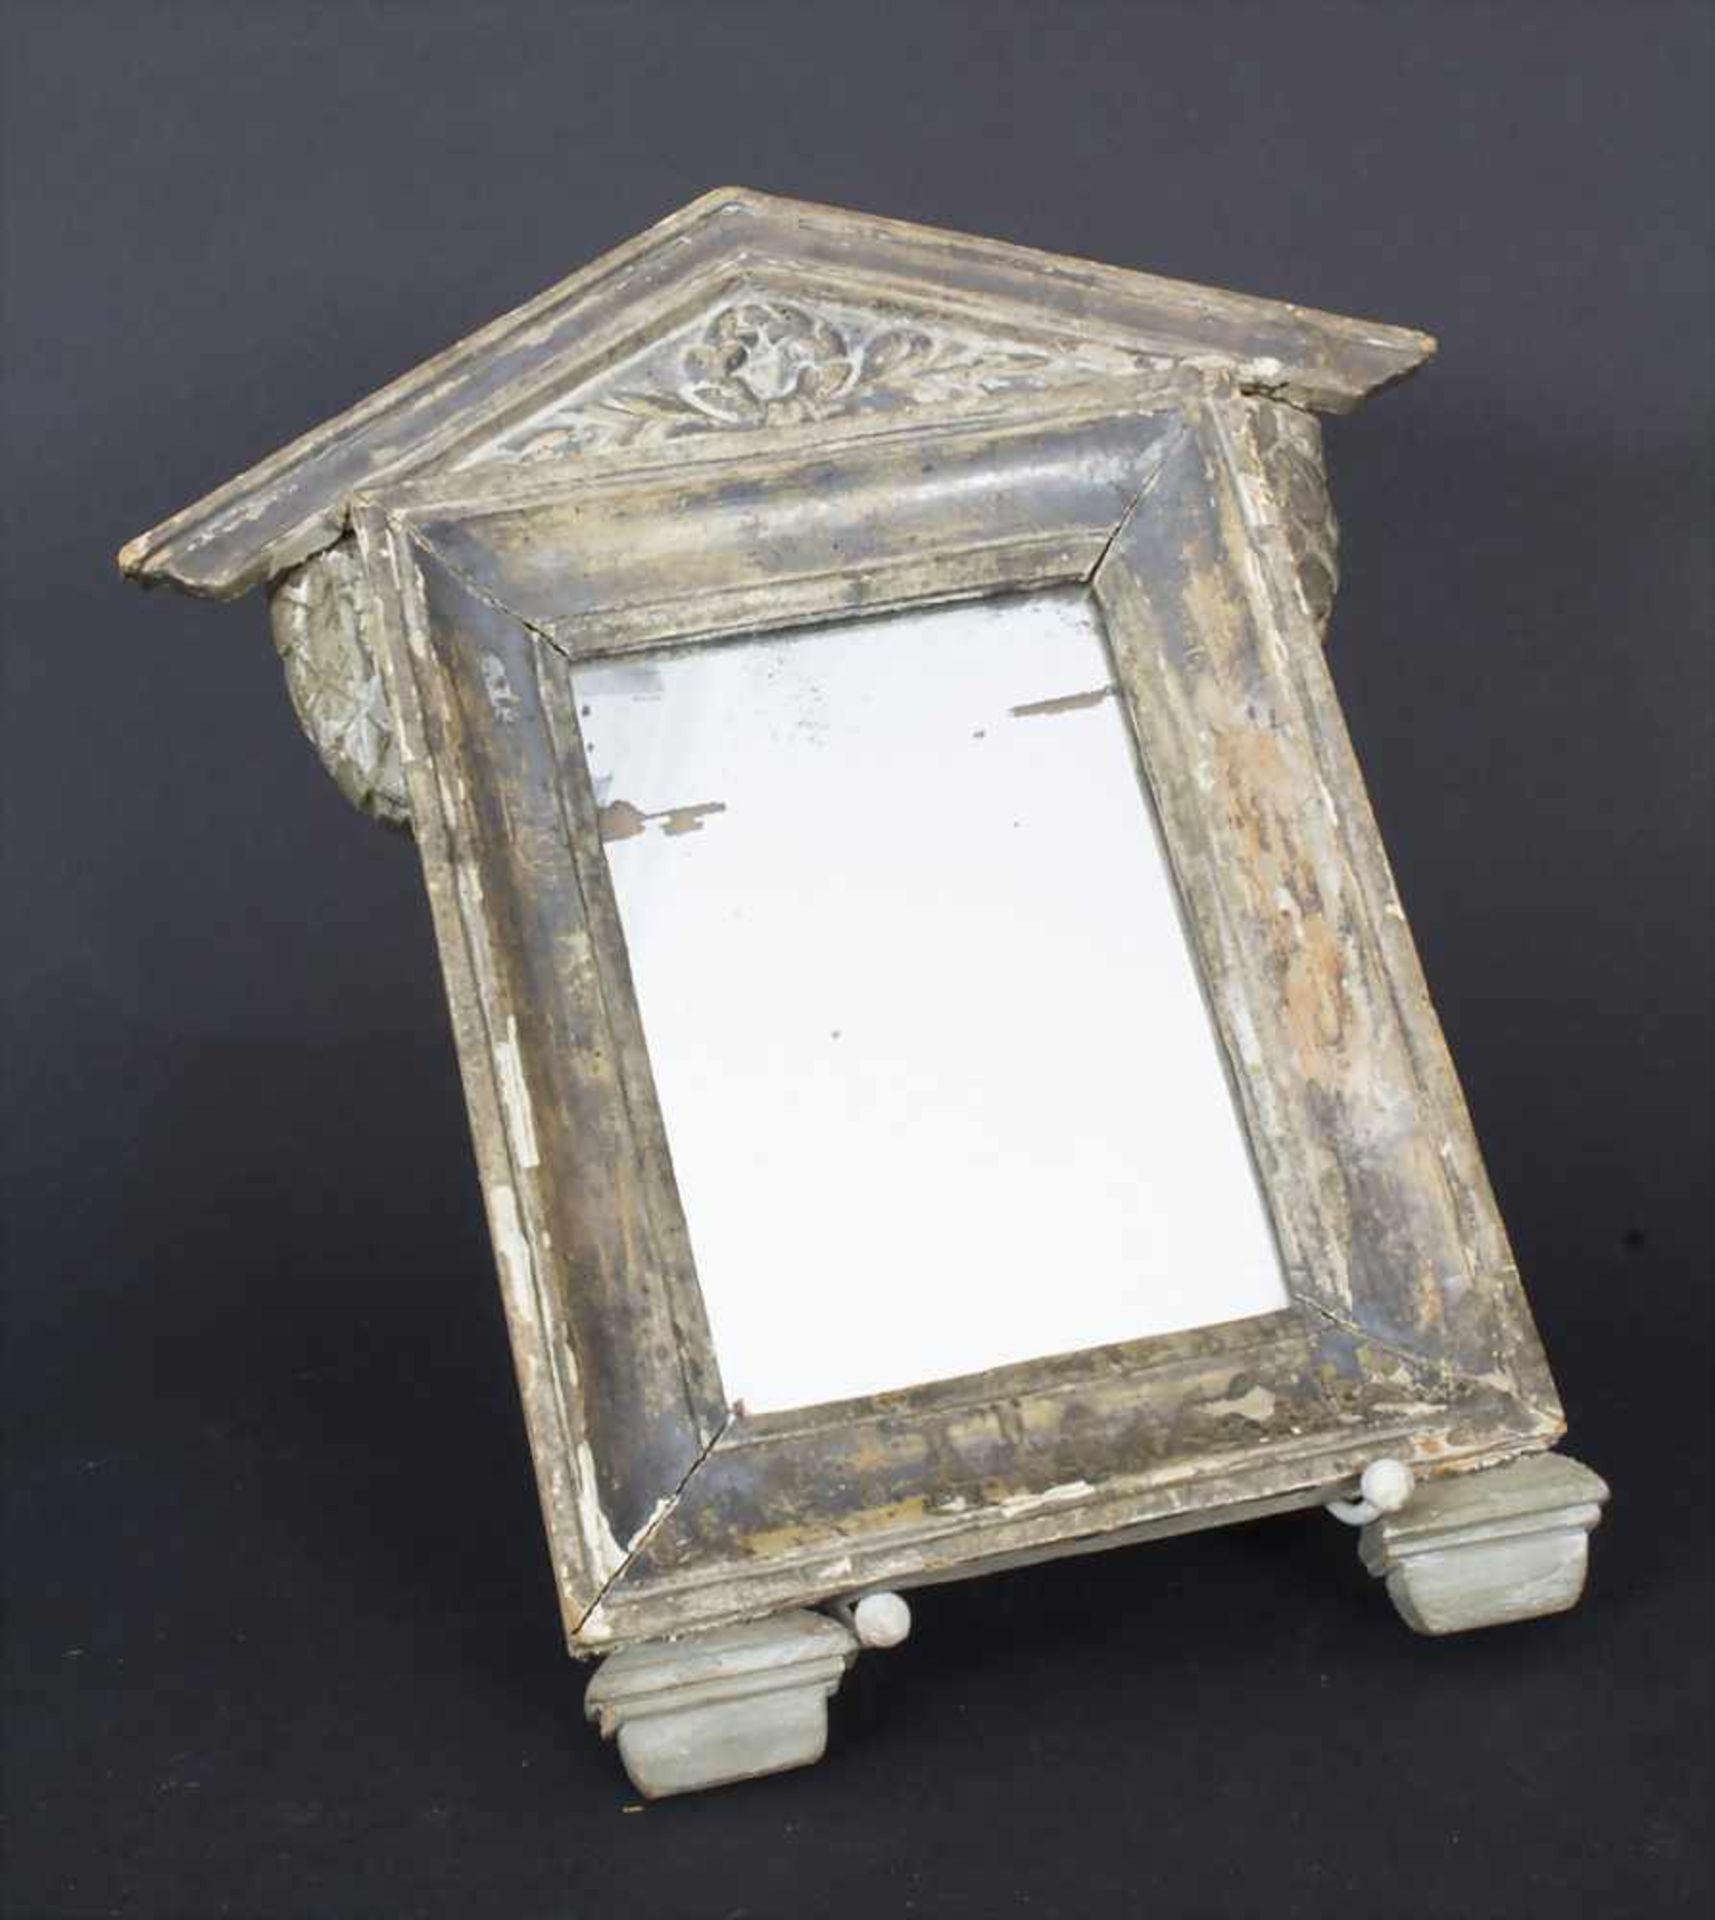 Wandspiegel / A mirror, 18. Jh.Material: Glas, Holz, stuckiert und vergoldet, Wandaufhängung,Maße: